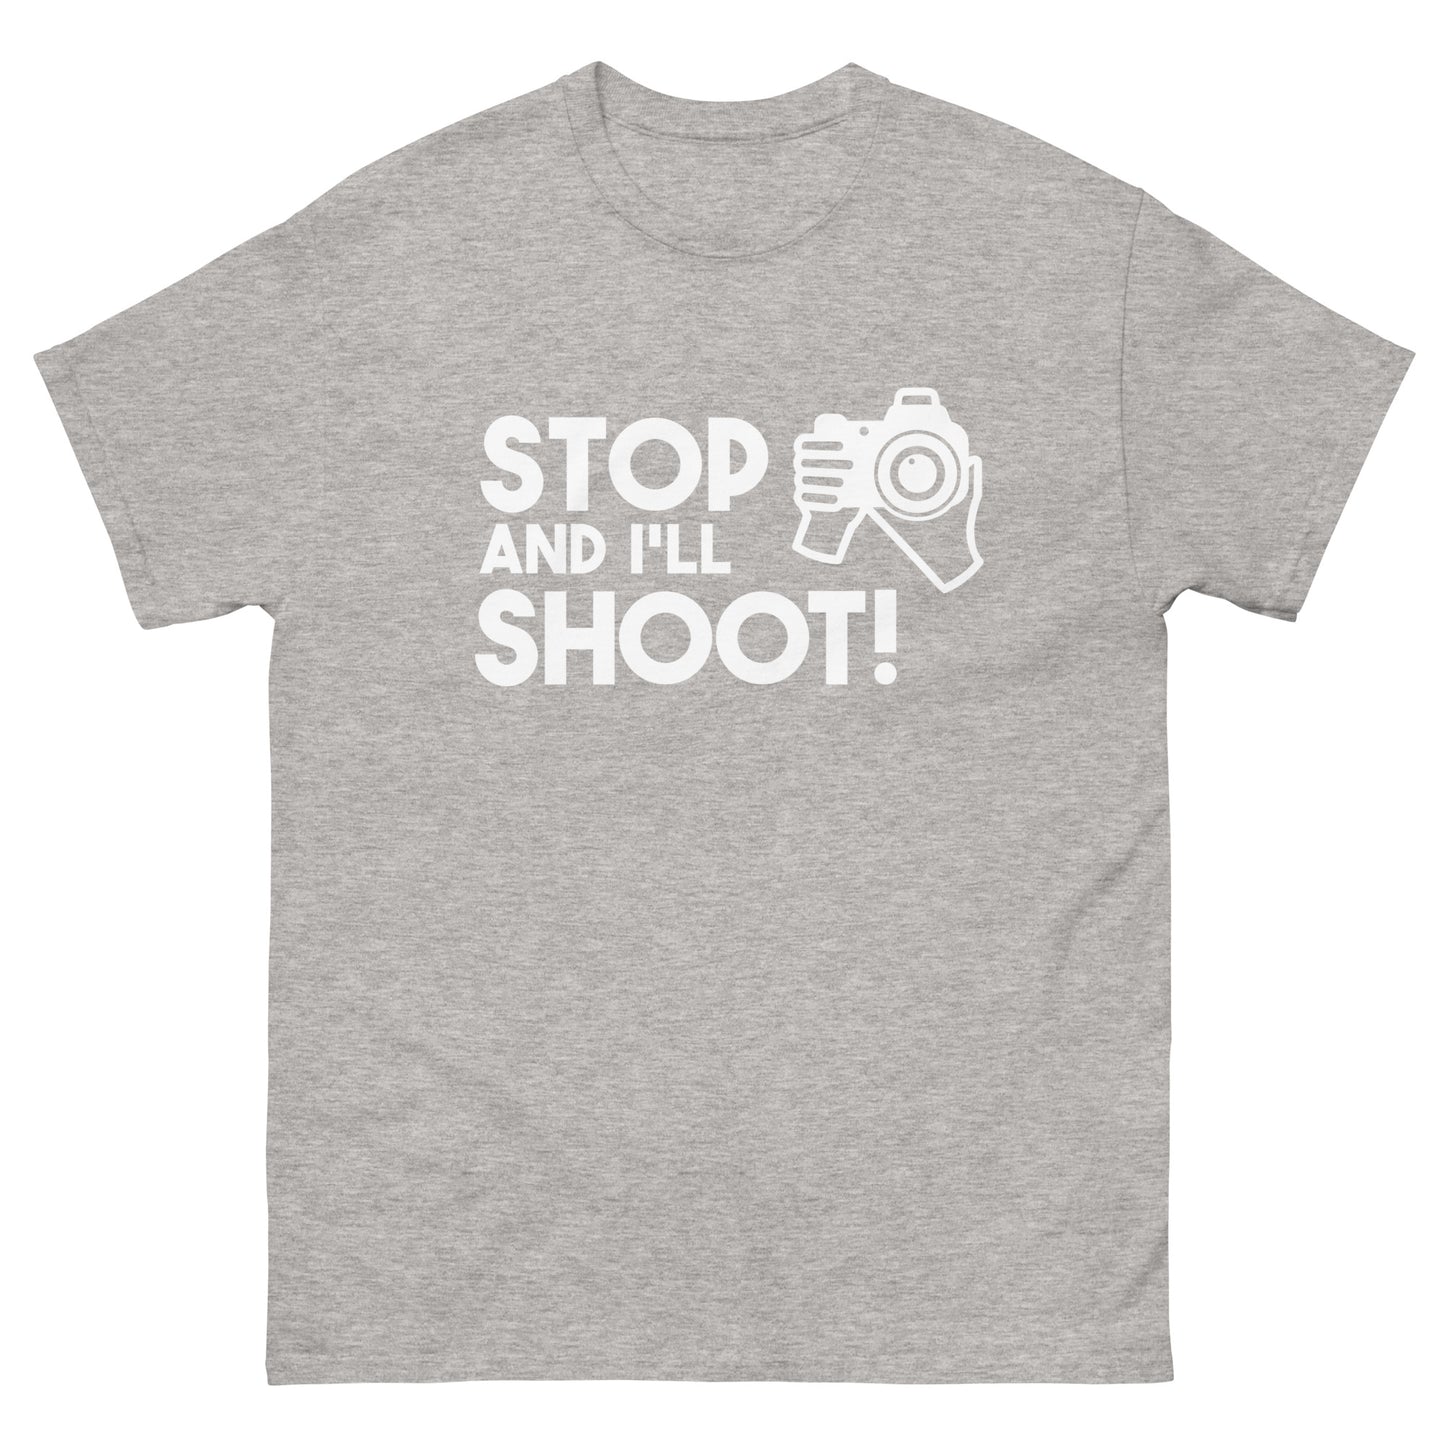 Herren-T-Shirts - Stopp und ich schieße - Weißes Logo